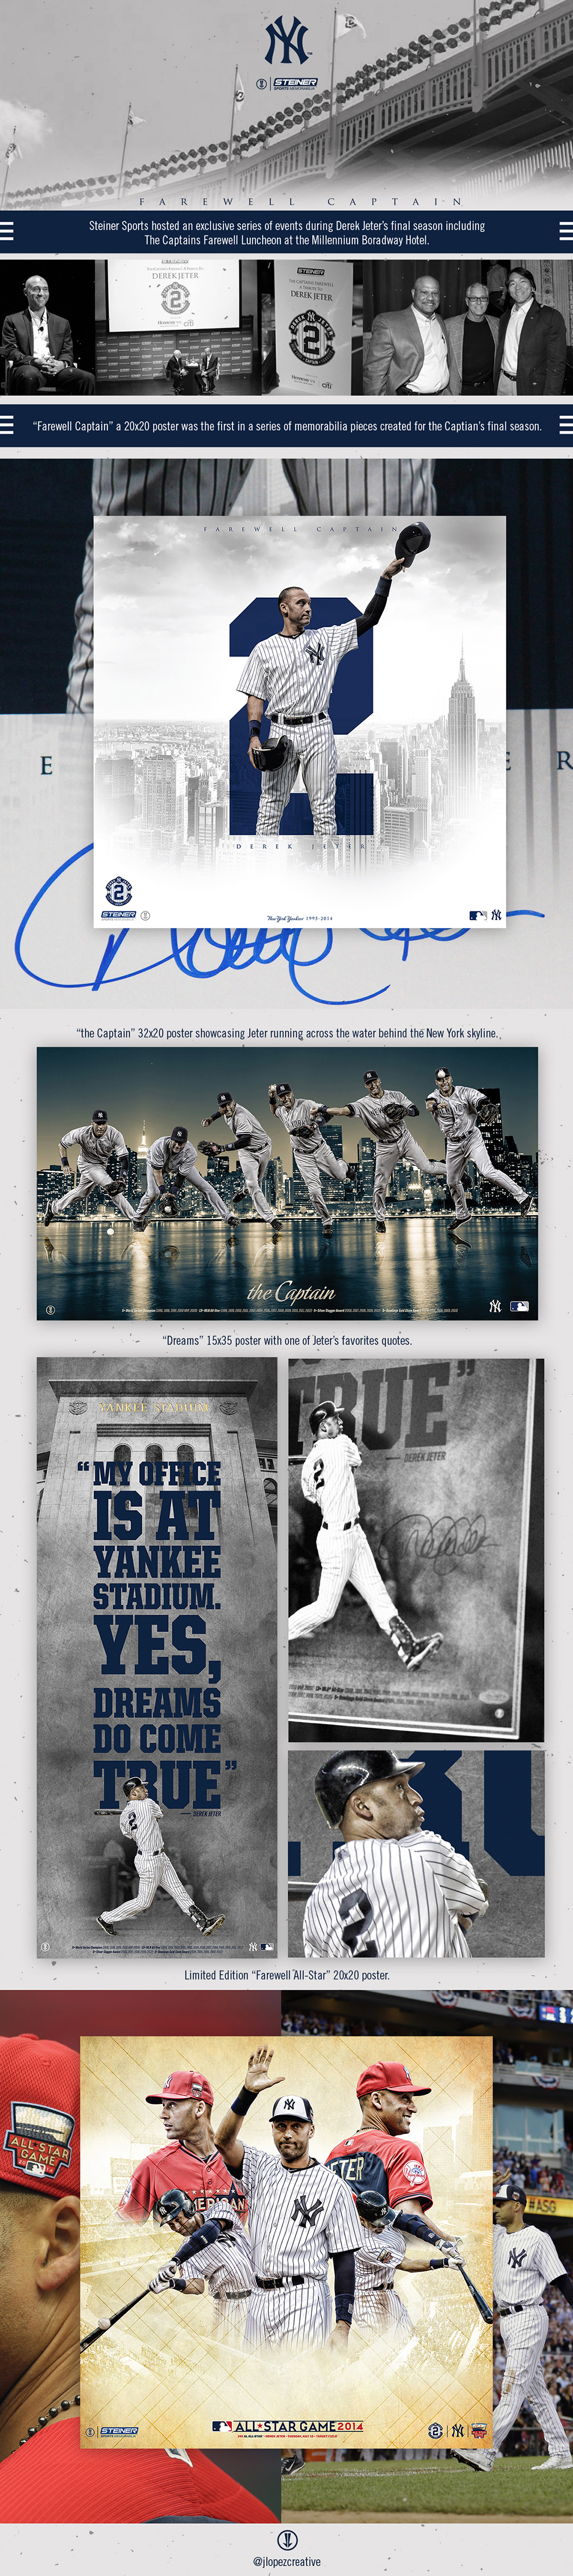 New York Yankees New York Derek Jeter baseball mlb Major league baseball the Captain